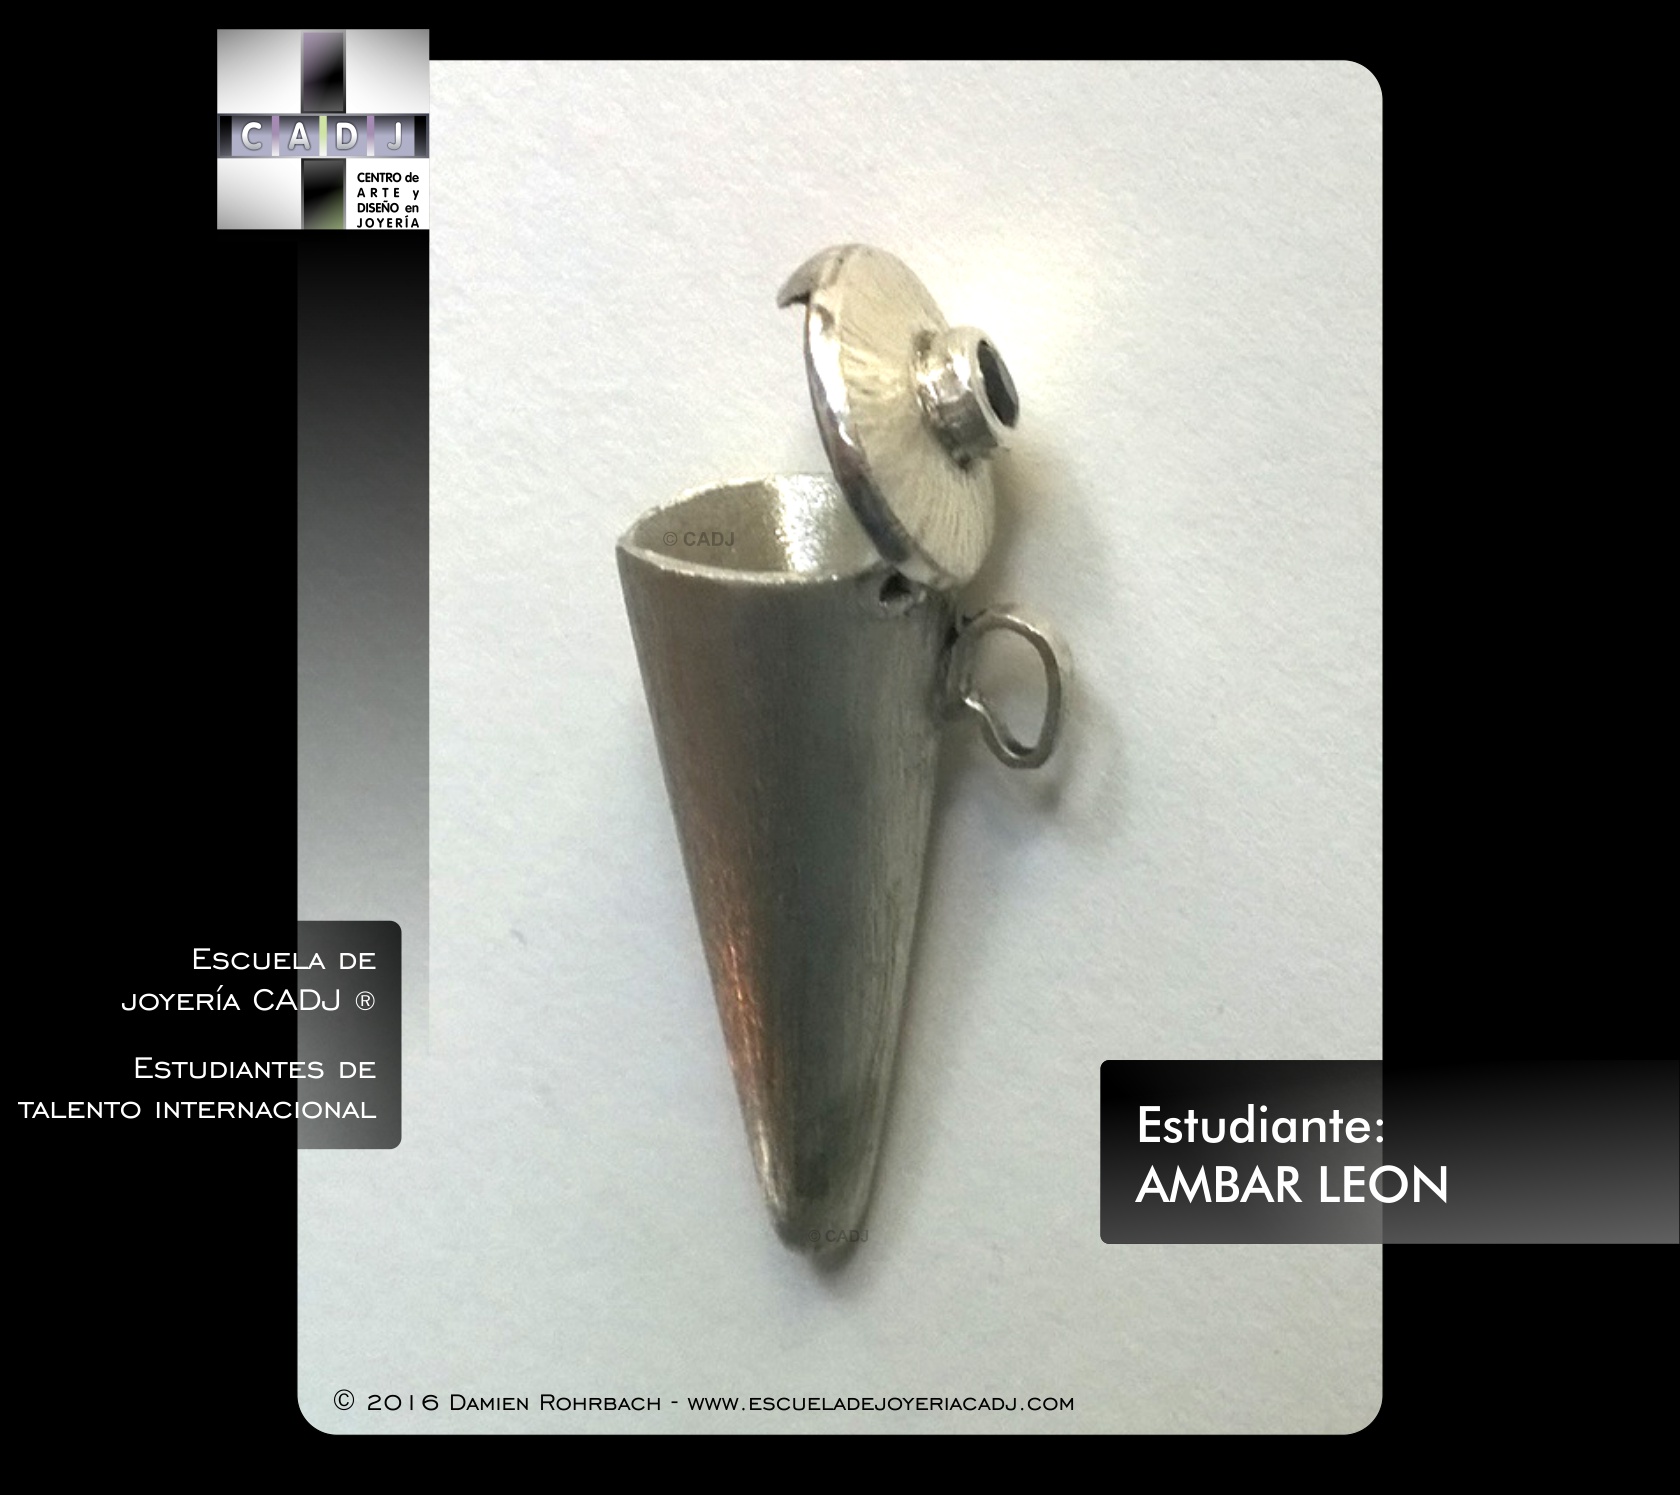 Caja en forma de cono de plata con piedra, Escuela de joyería CADJ ®